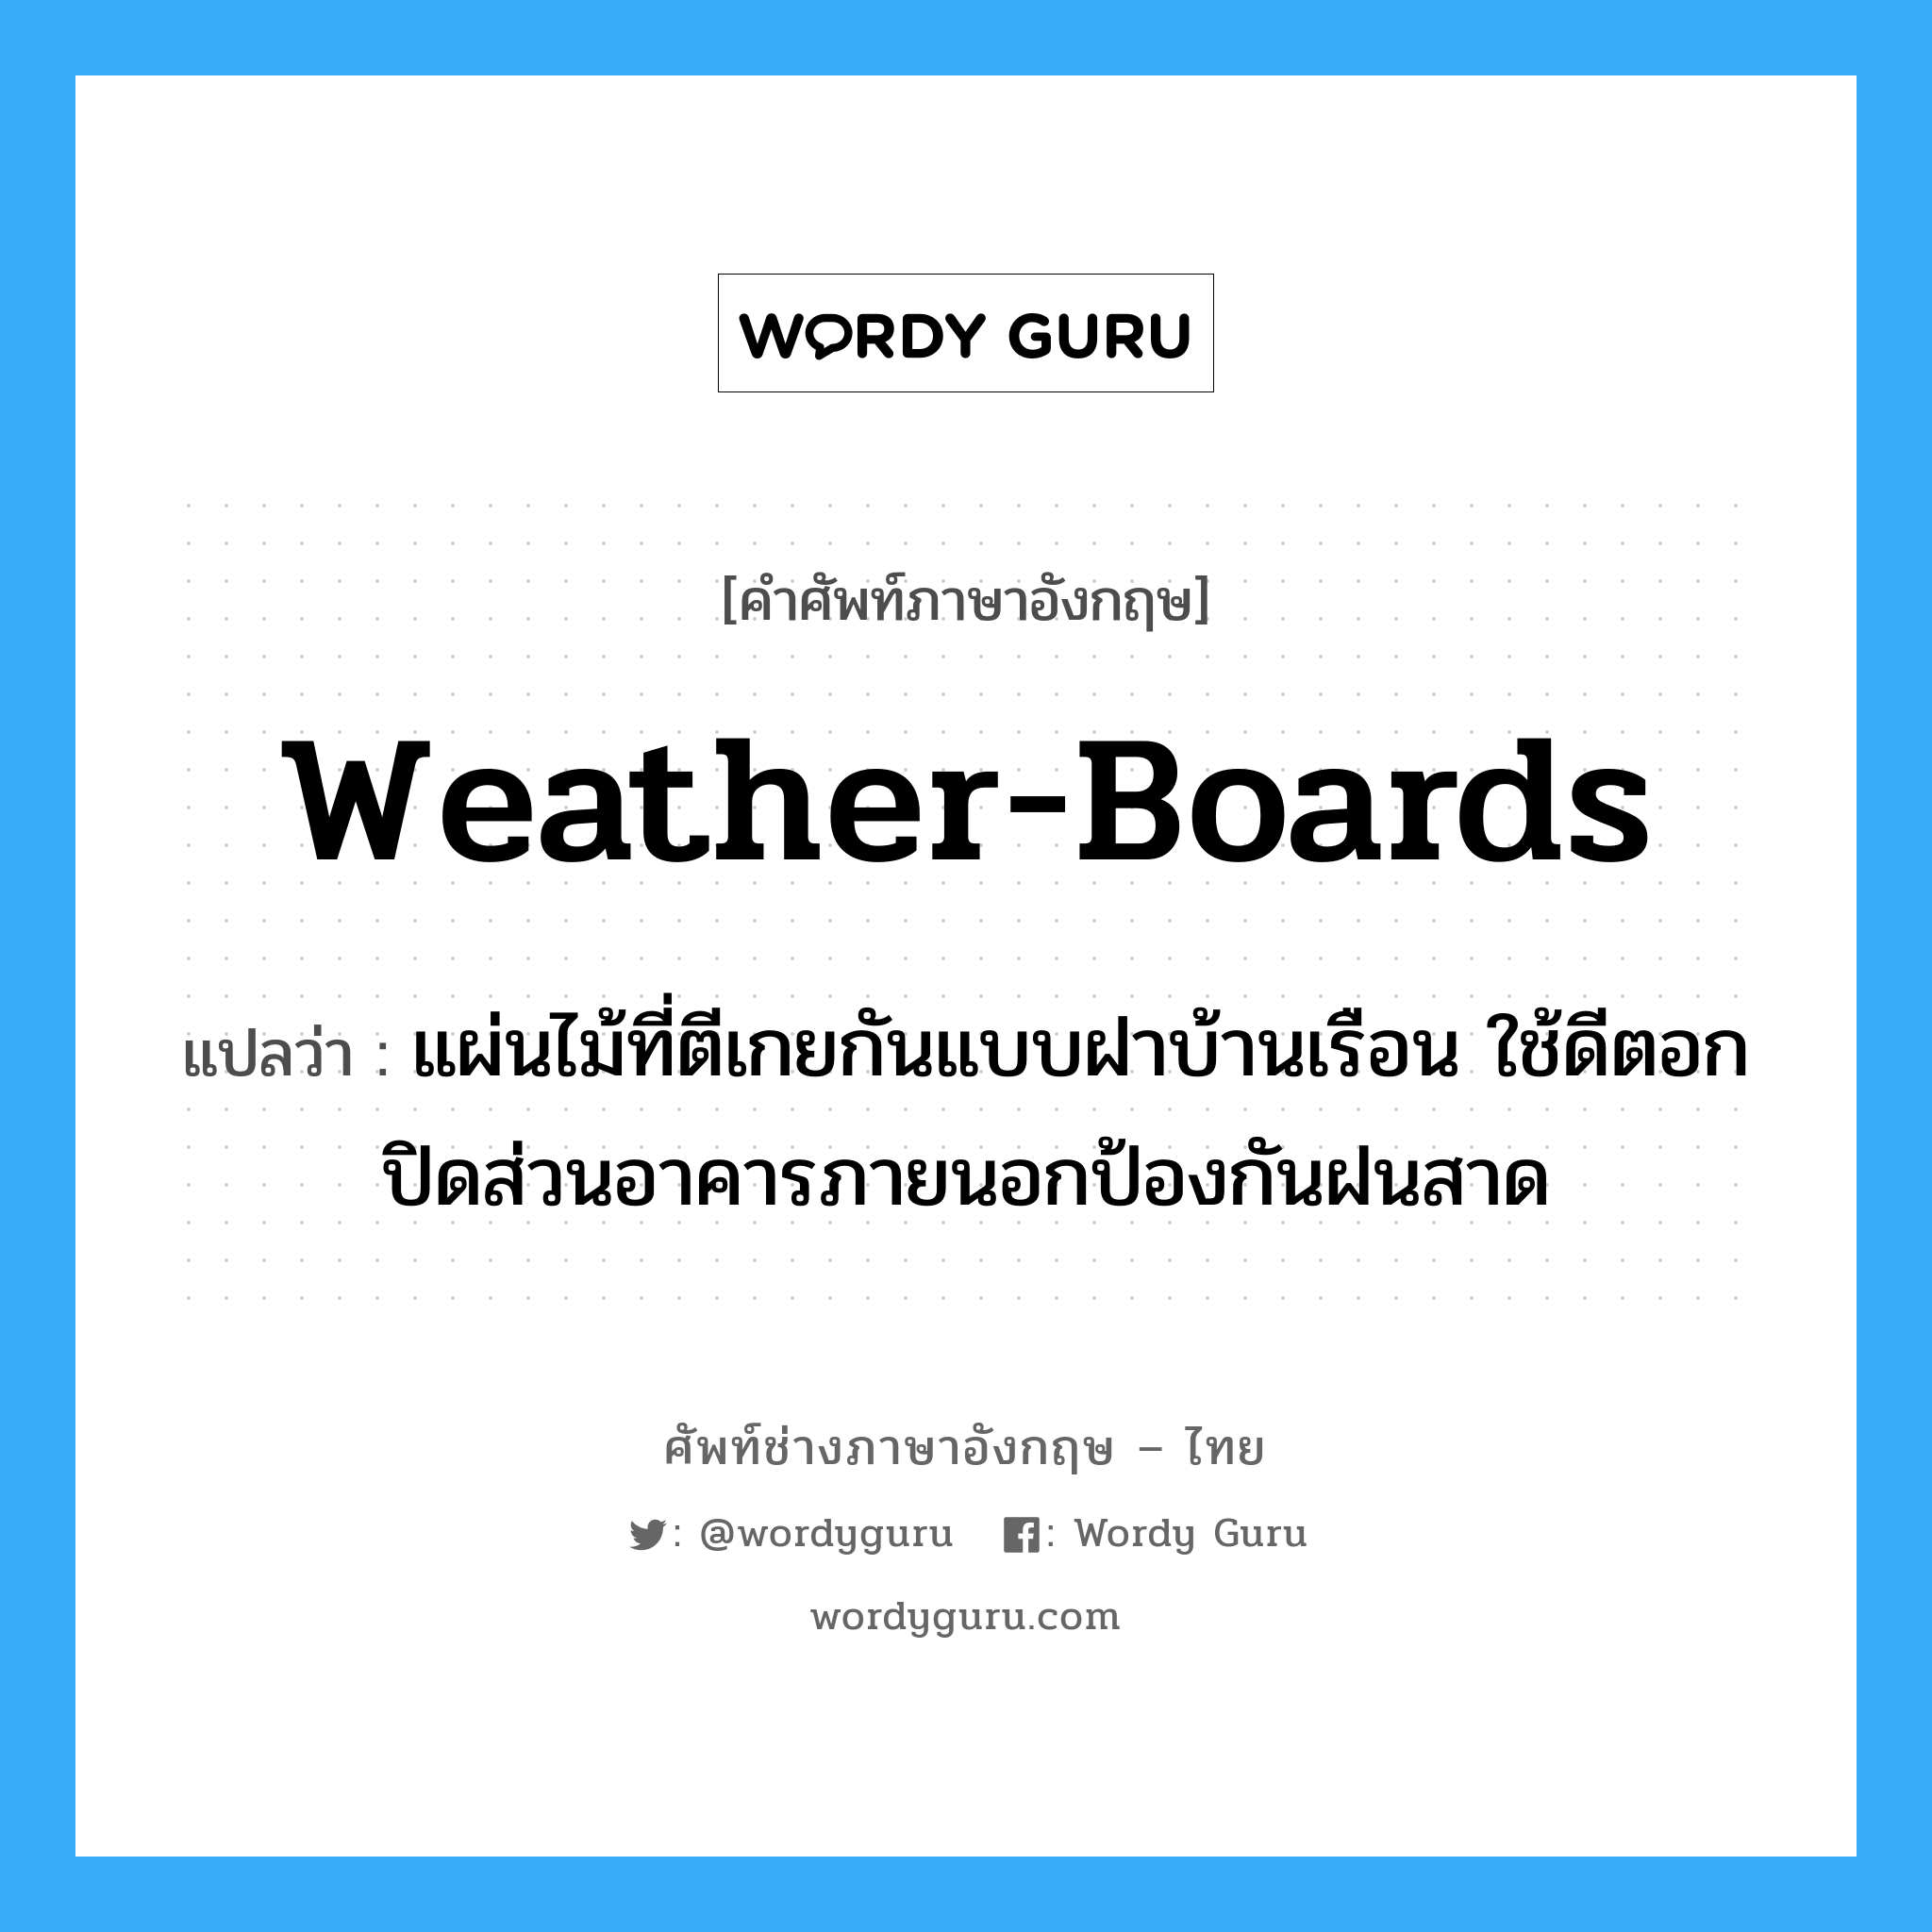 weather-boards แปลว่า?, คำศัพท์ช่างภาษาอังกฤษ - ไทย weather-boards คำศัพท์ภาษาอังกฤษ weather-boards แปลว่า แผ่นไม้ที่ตีเกยกันแบบฝาบ้านเรือน ใช้ดีตอกปิดส่วนอาคารภายนอกป้องกันฝนสาด